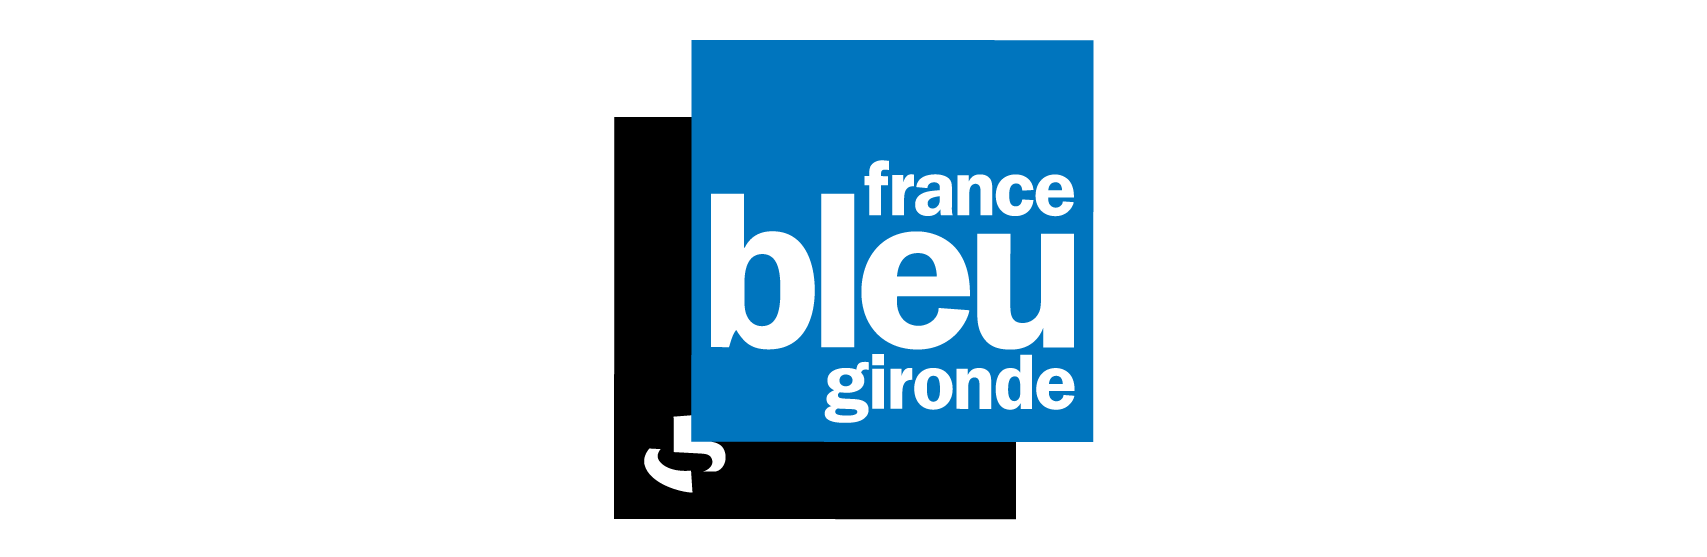 logo-france-bleu-1